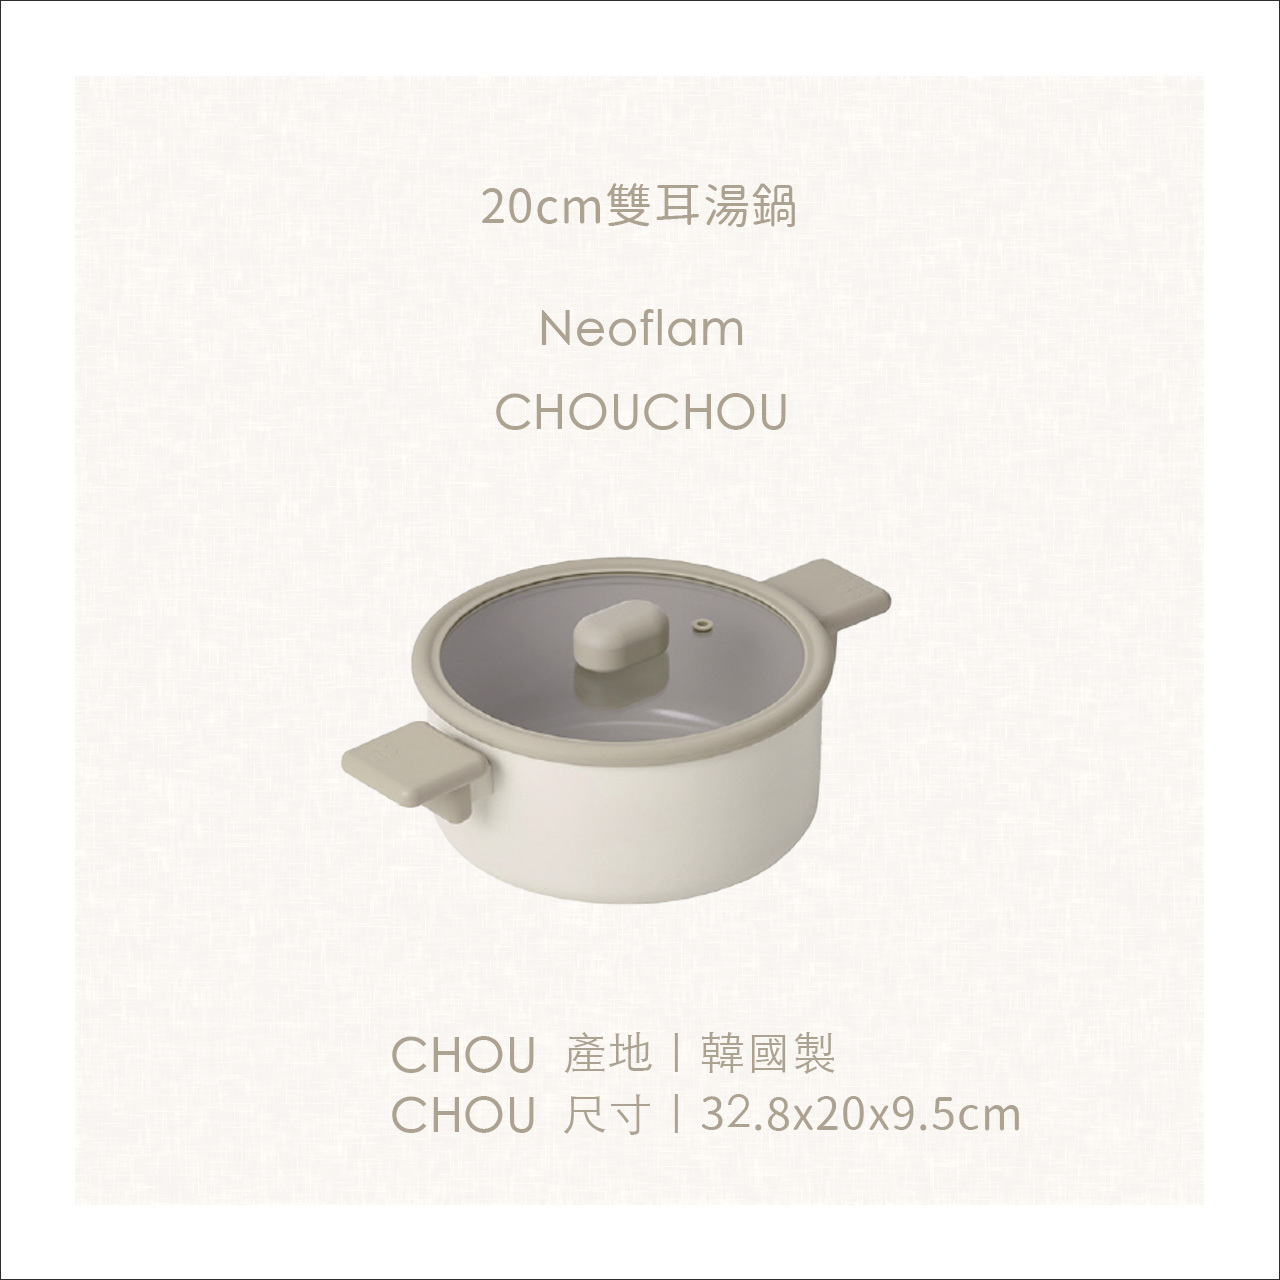 chouchou尺寸-20cm雙